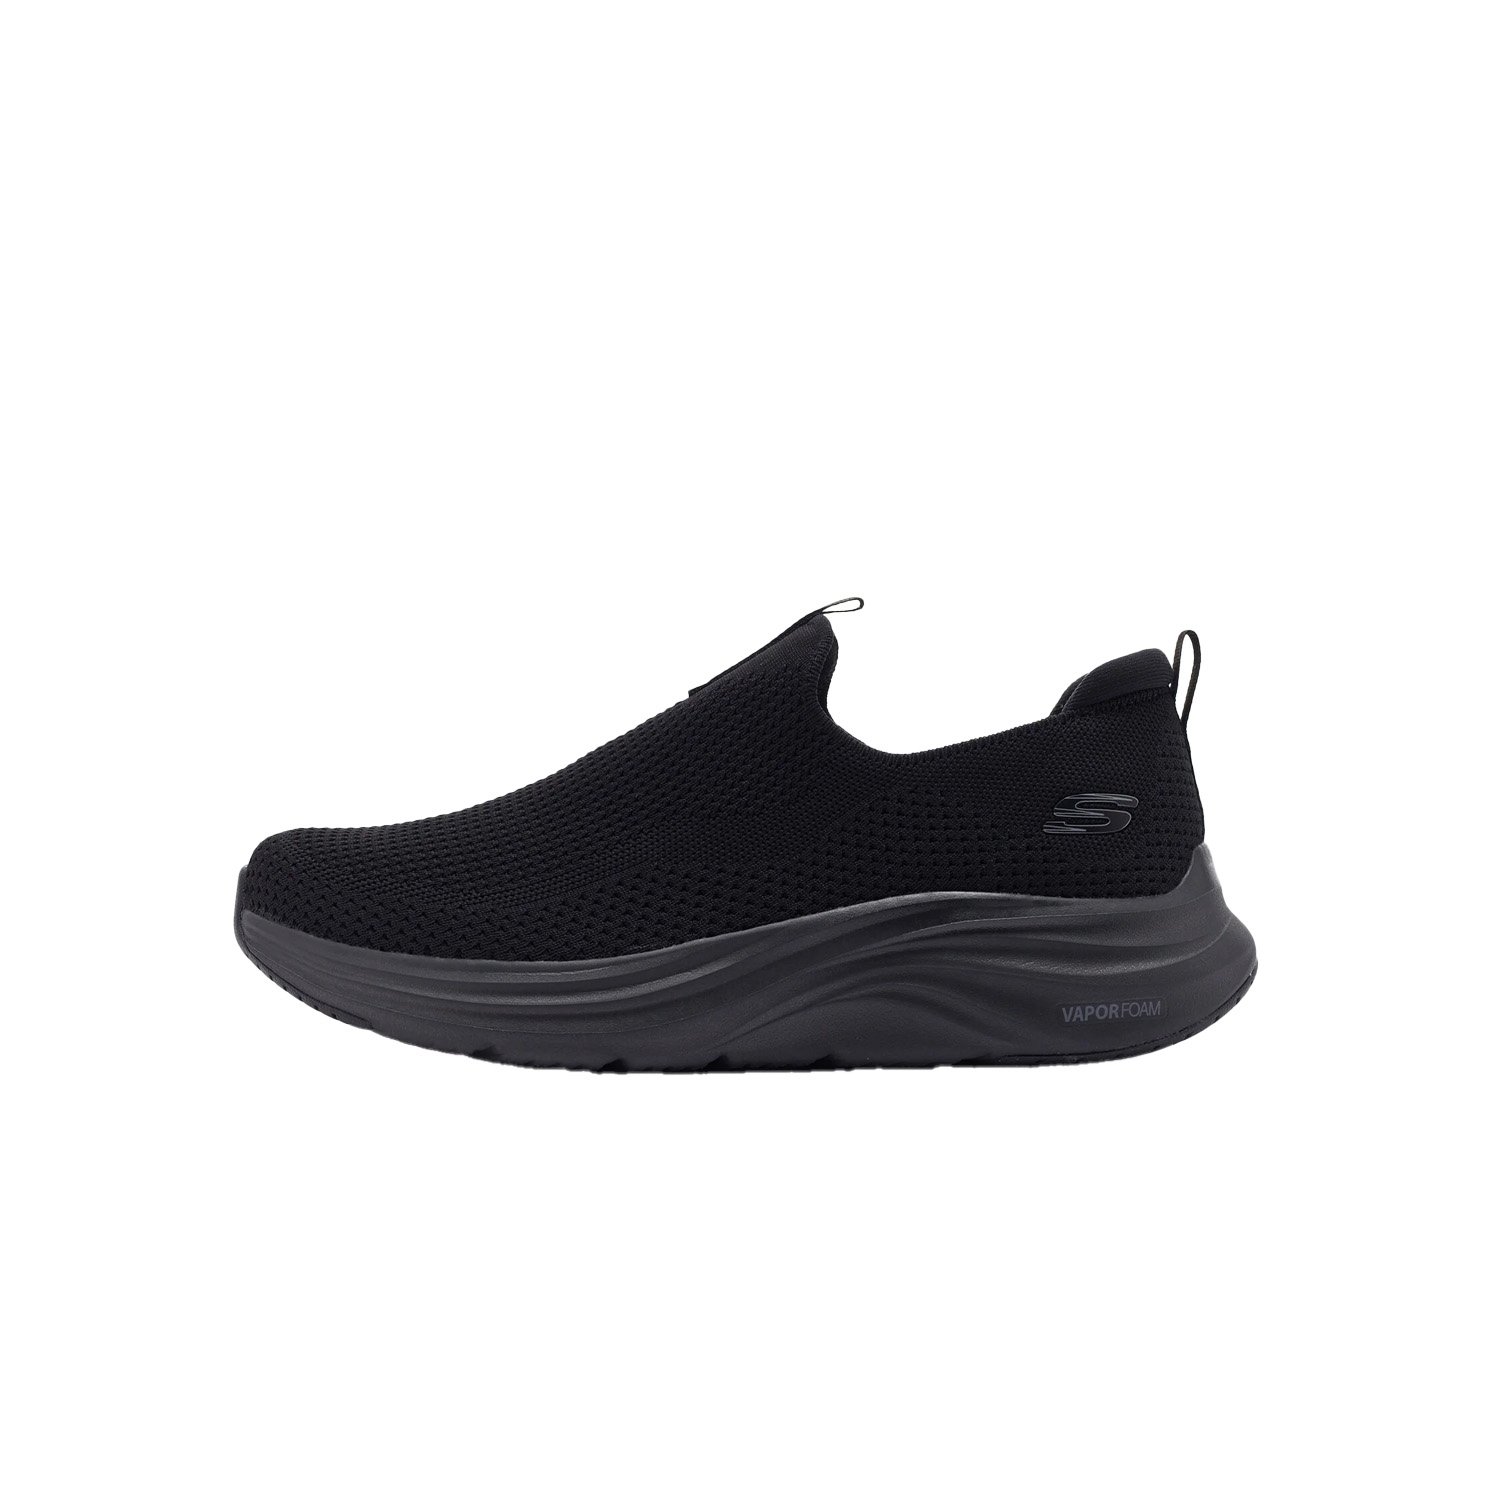 Skechers Vapor Foam Erkek Ayakkabısı - Siyah - 1